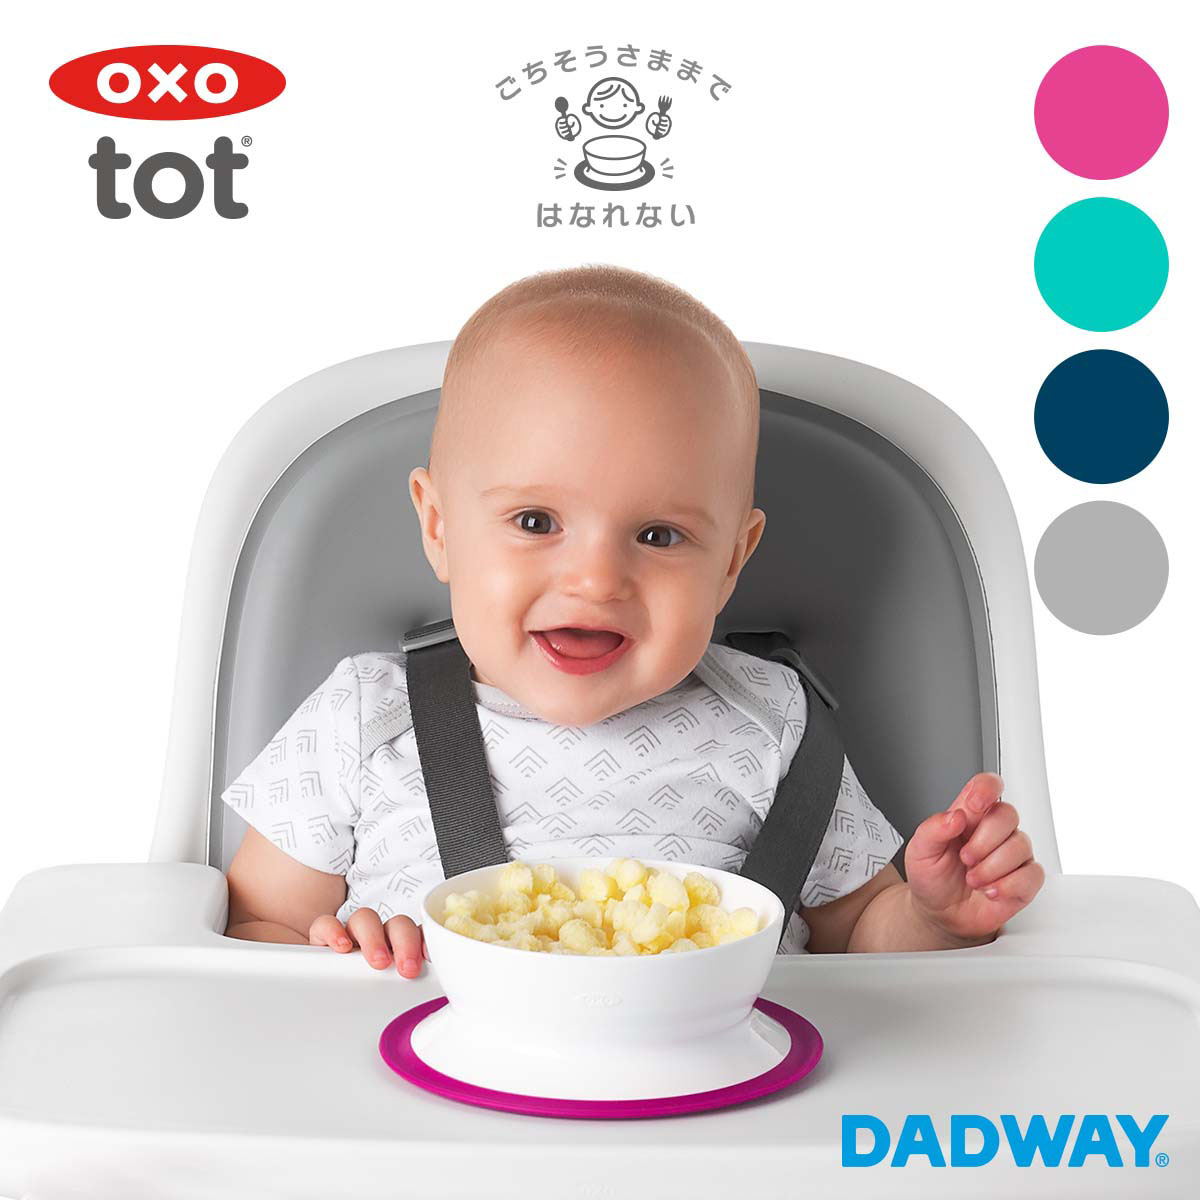 OXO oxo tot オクソートット くっつくランチプレート トレーニングプレート お皿 食器 離乳食 ベビー 赤ちゃん すくいやすい すべらない こぼしにくい 吸盤 子供 女の子 男の子